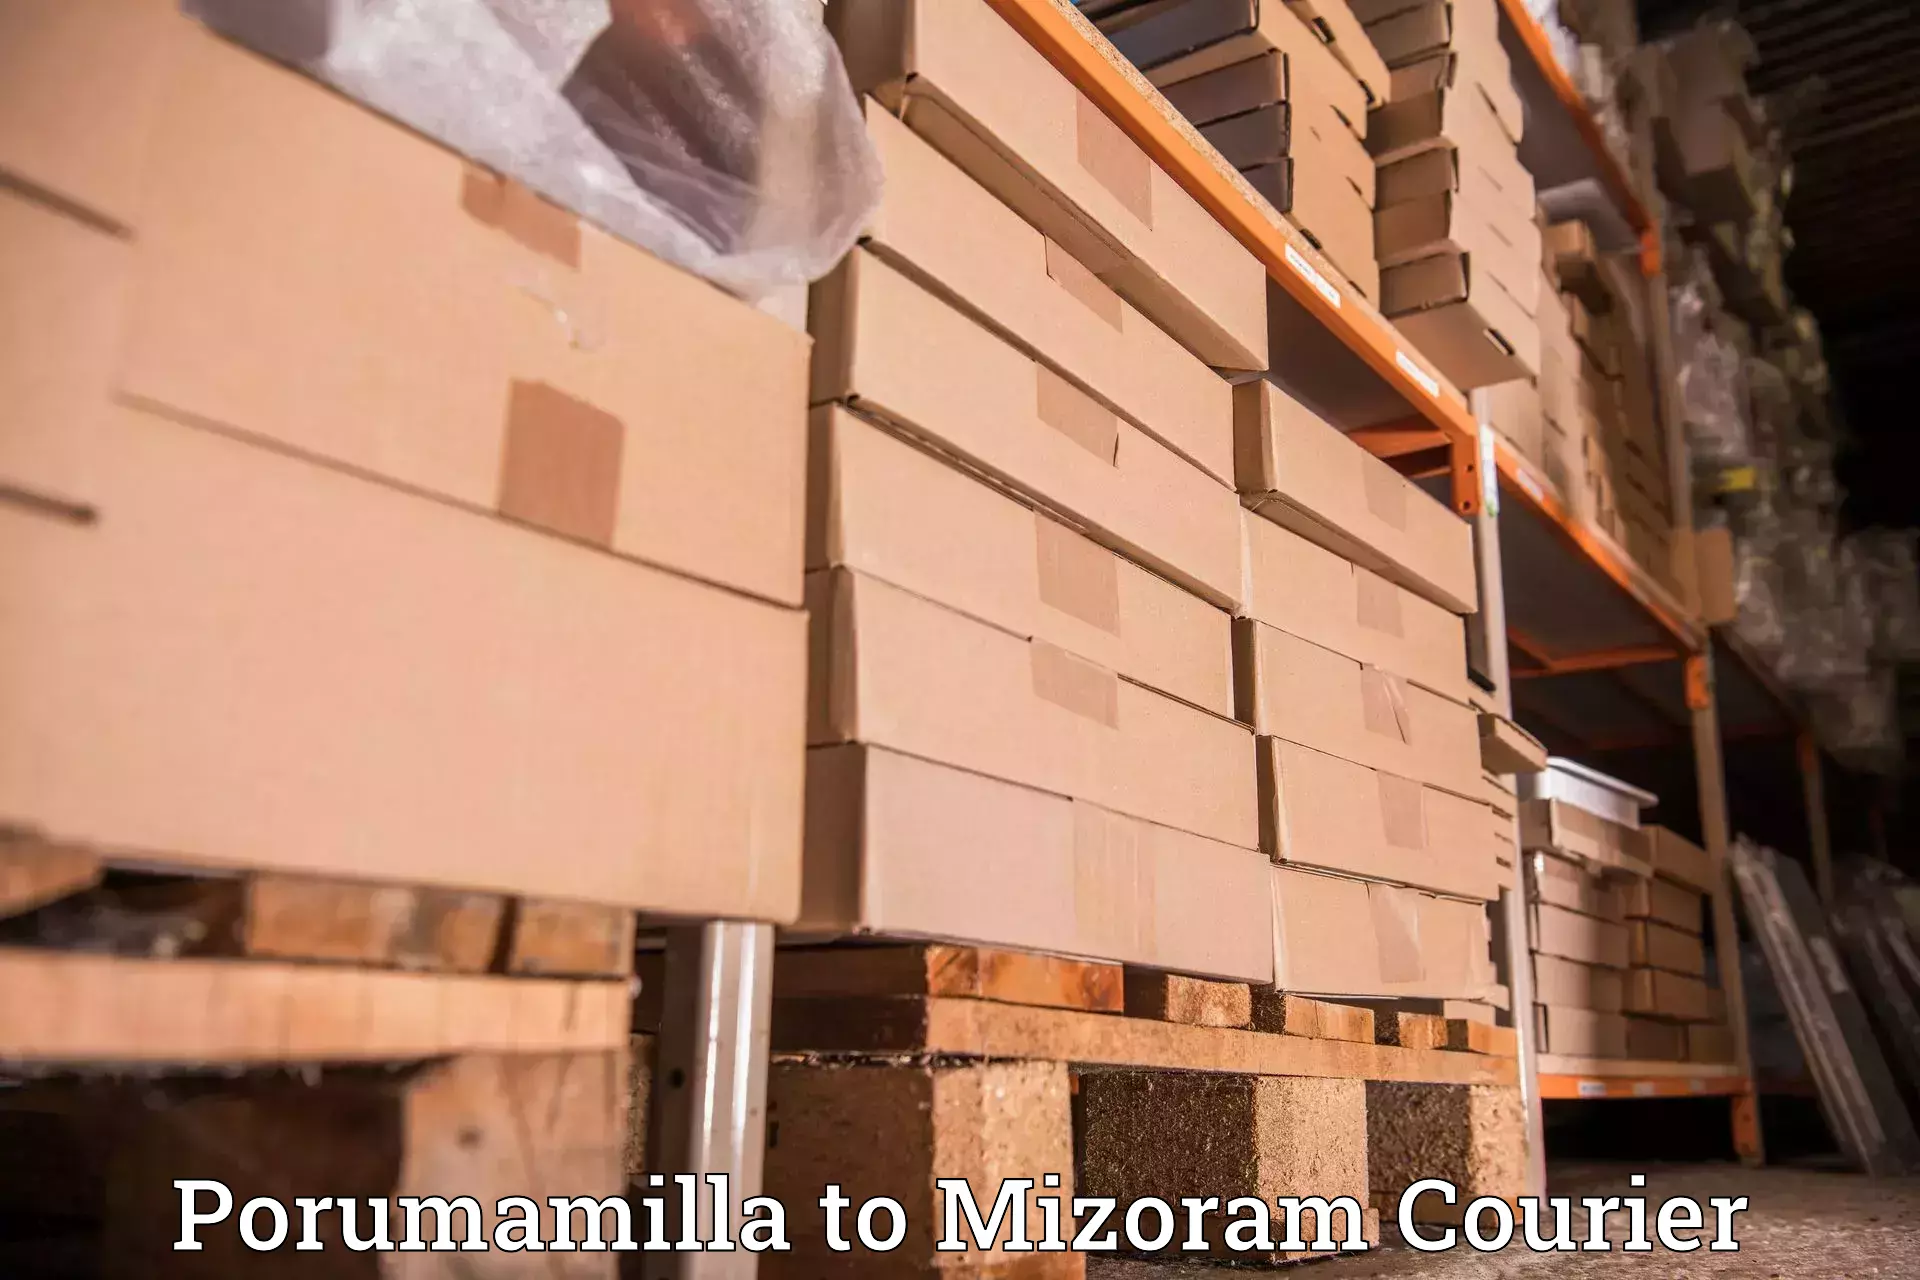 Courier service efficiency Porumamilla to Mizoram